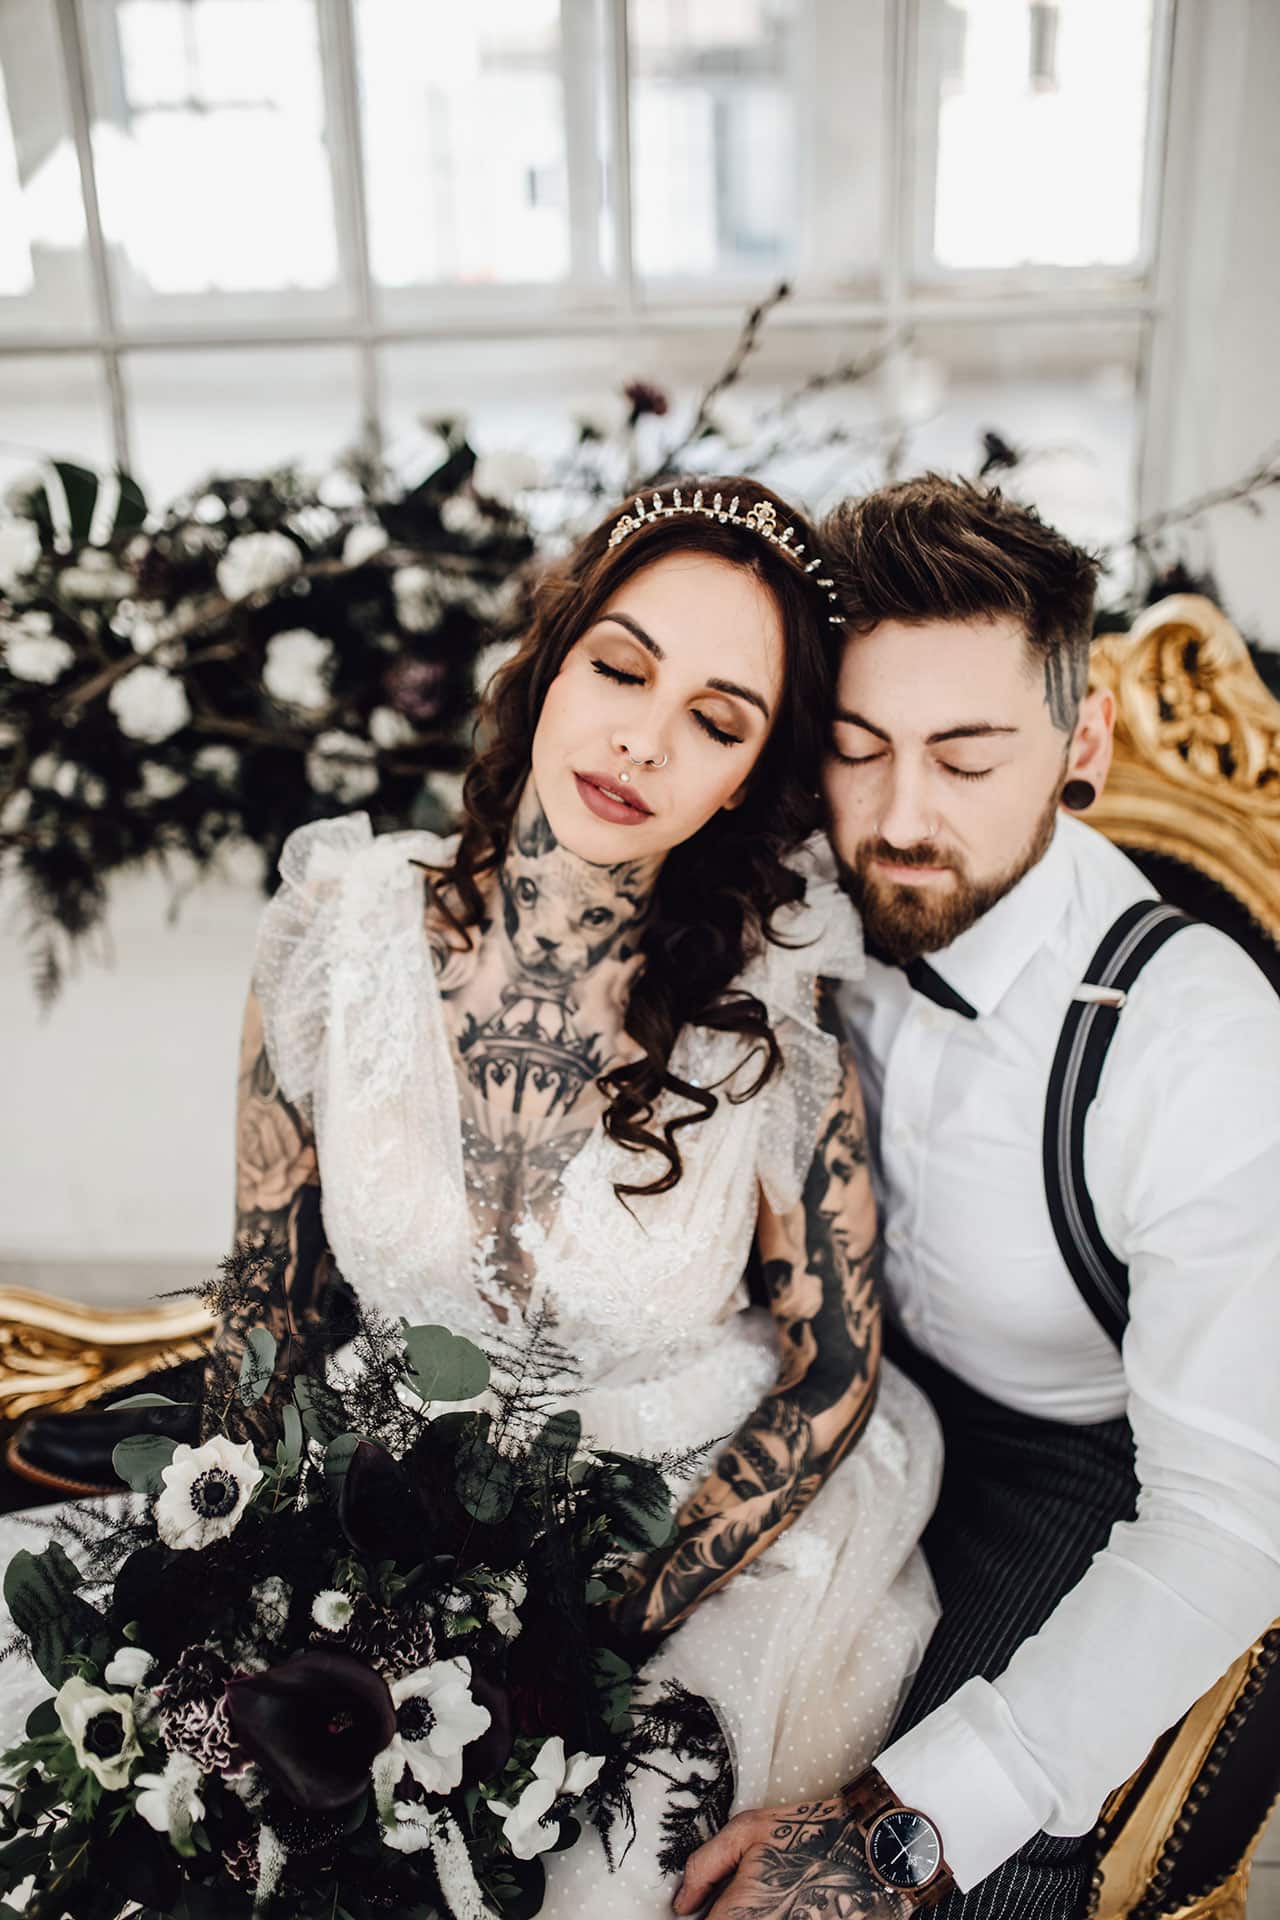 Brautpaar mit schwarzer Hochzeitsdeko Blumen